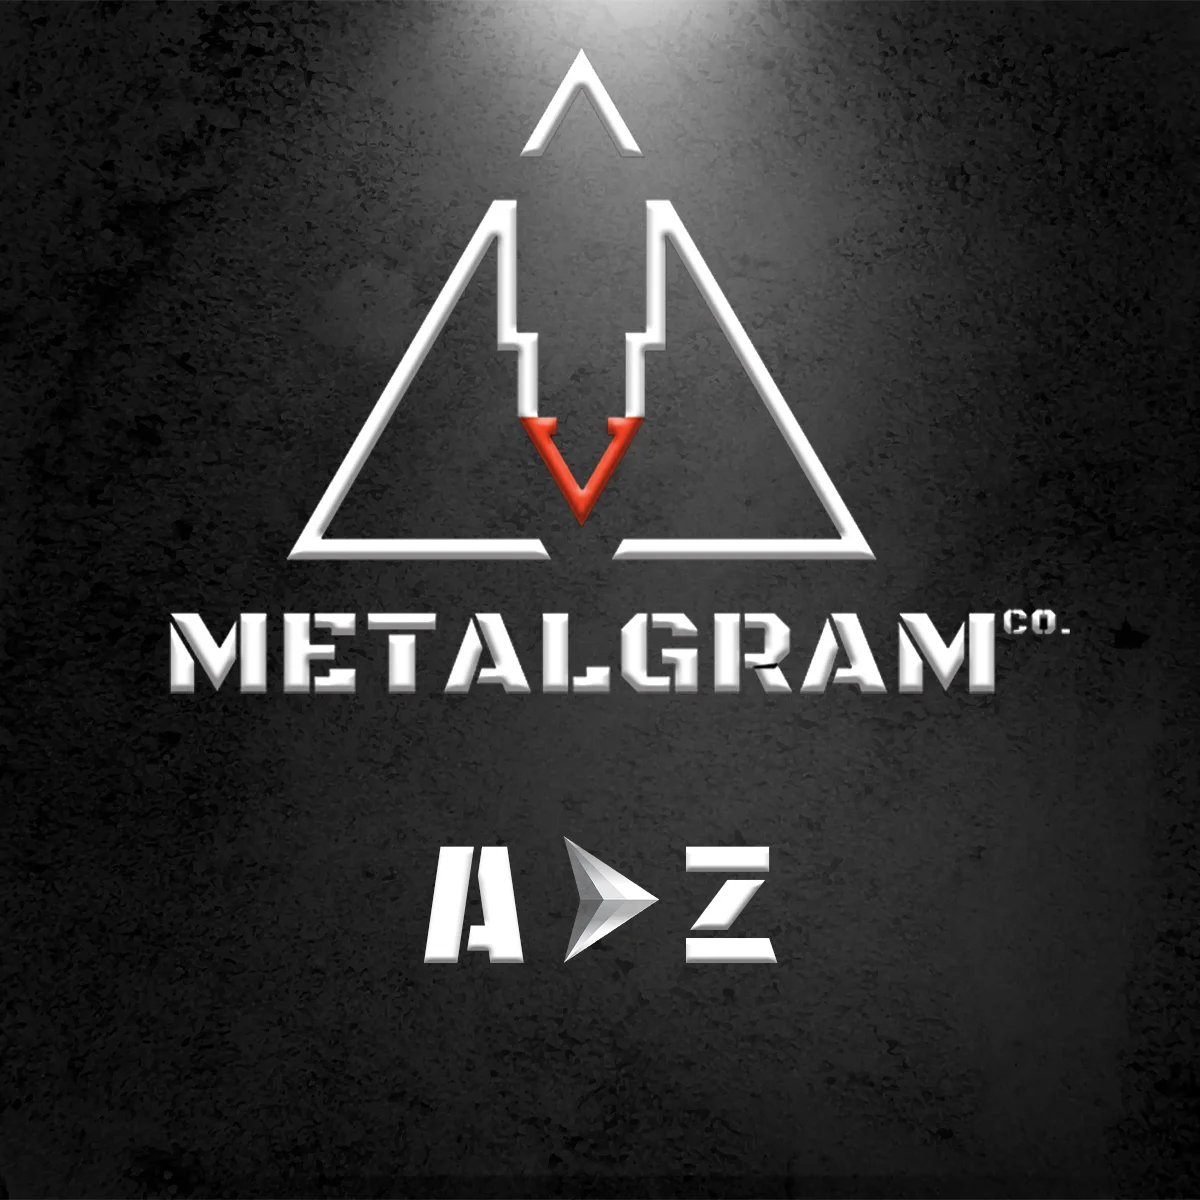 MetalGram-Social Media Marketing